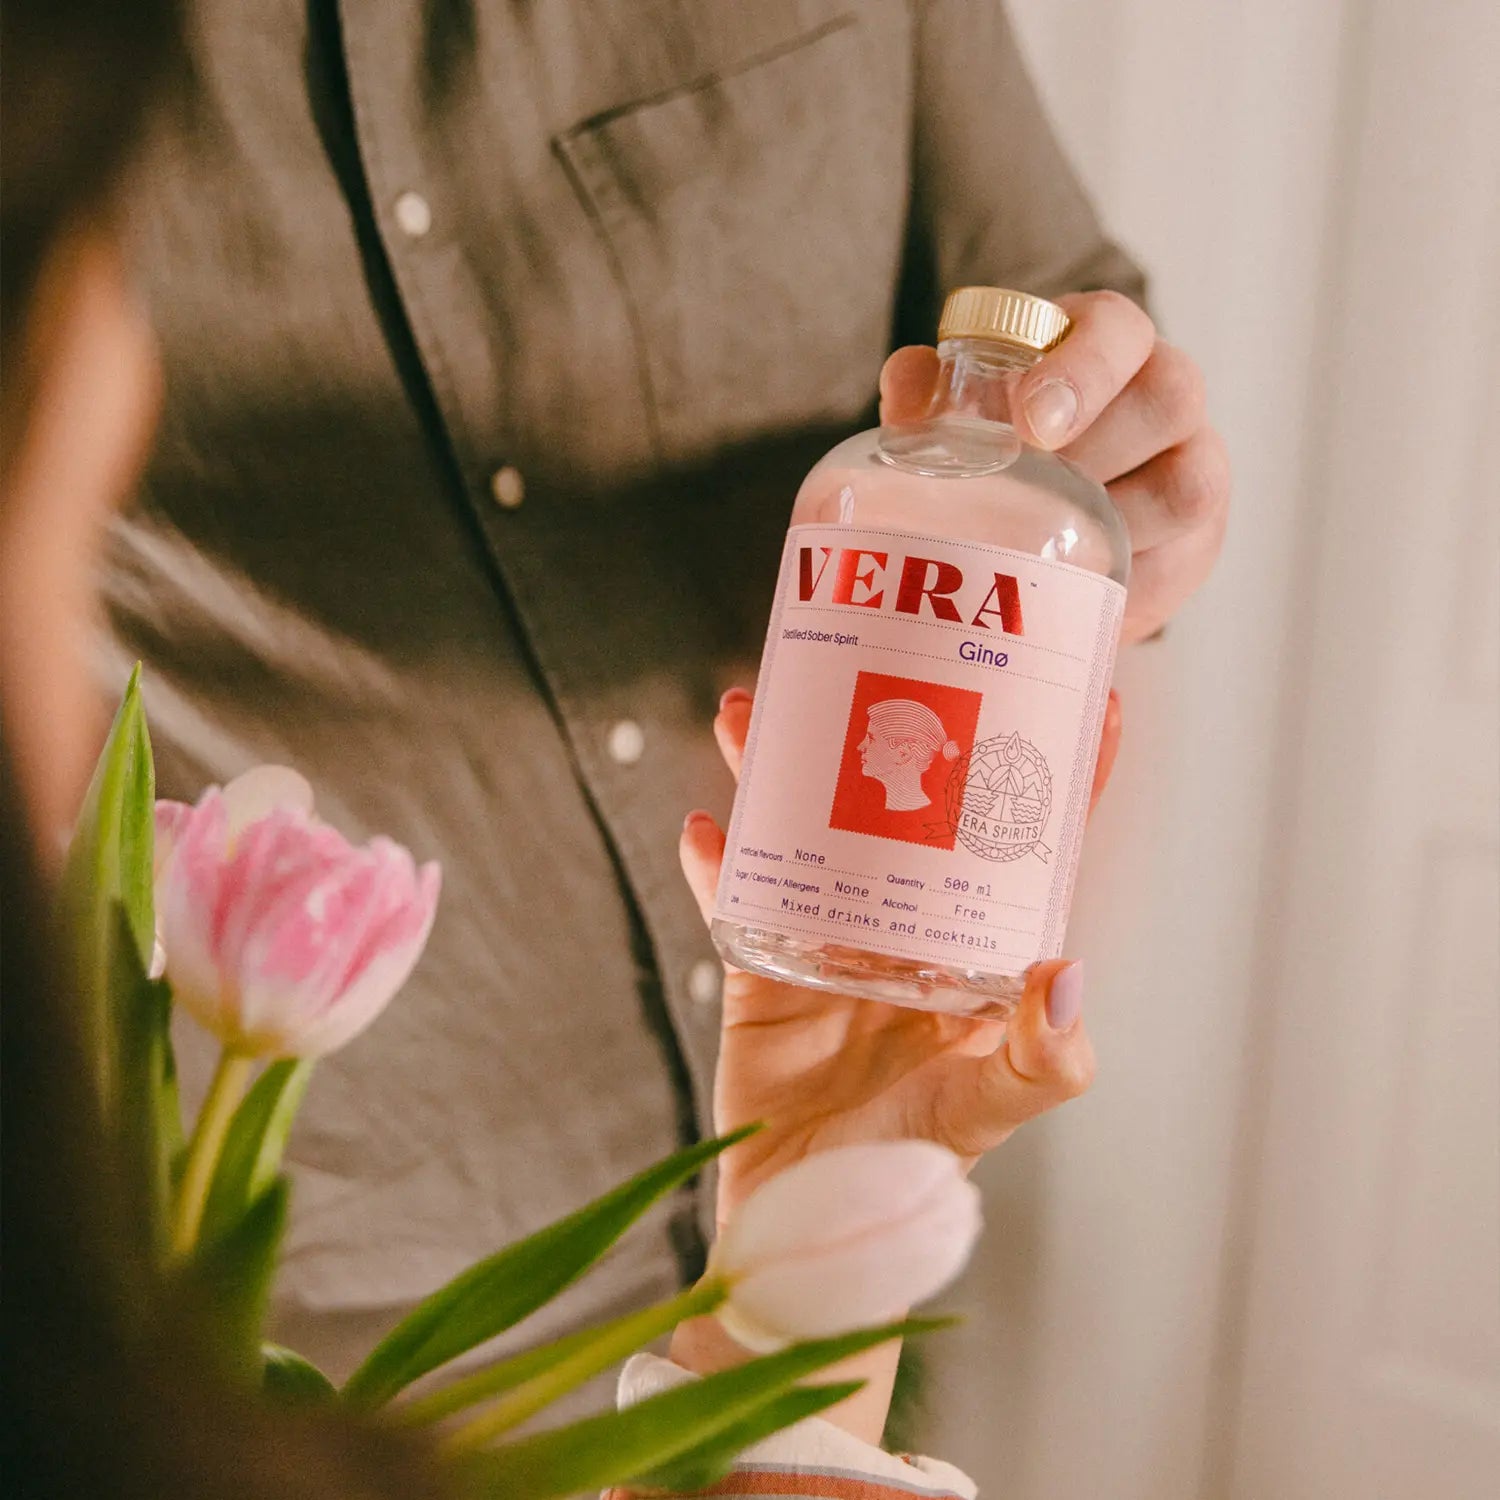 Vera non-alcoholic gin alternative